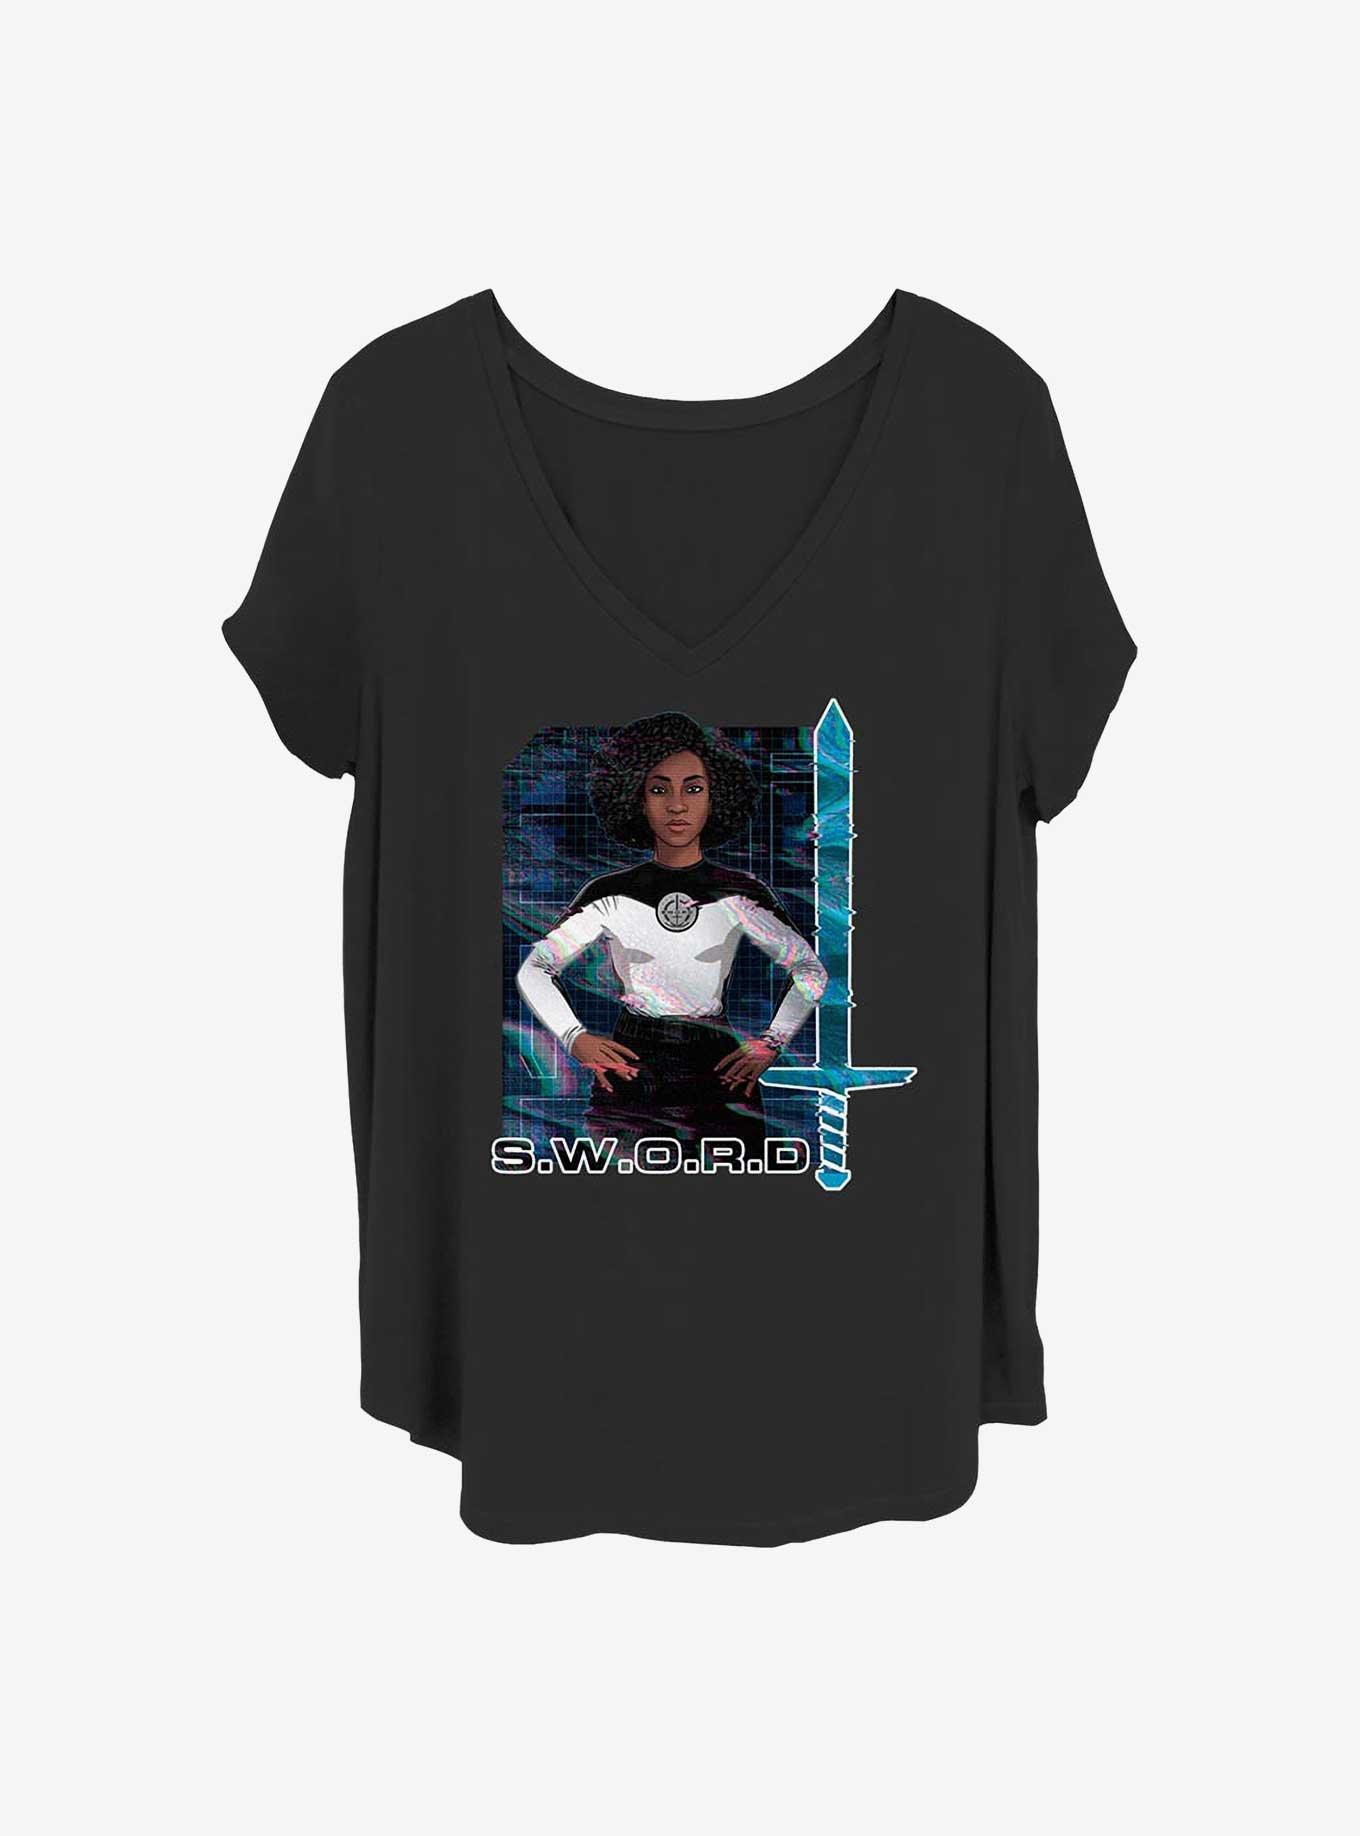 Marvel WandaVision Rambeau Glitch Girls T-Shirt Plus